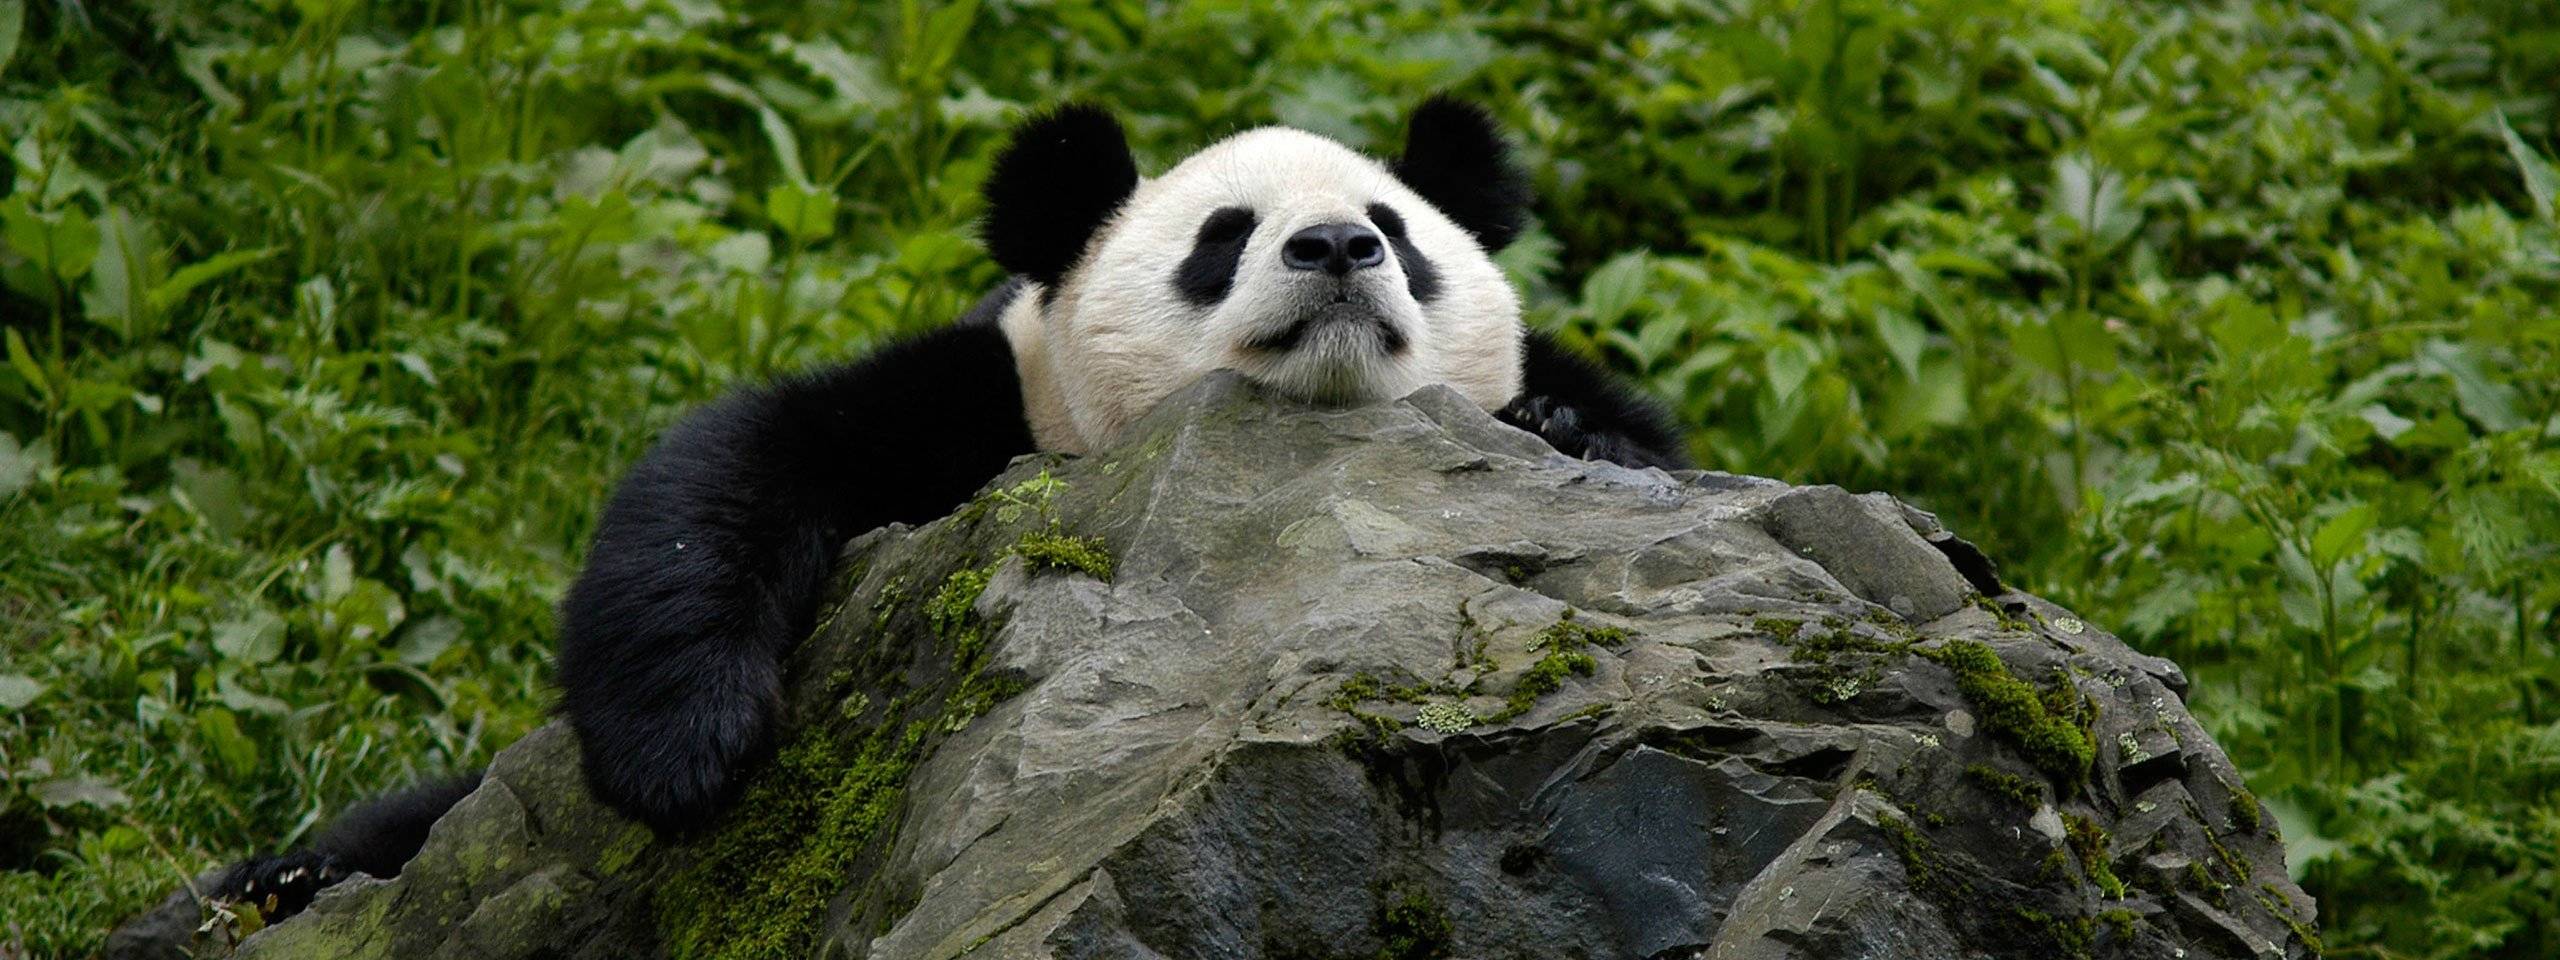 Большая панда, или бамбуковый медведь, или гигантская панда